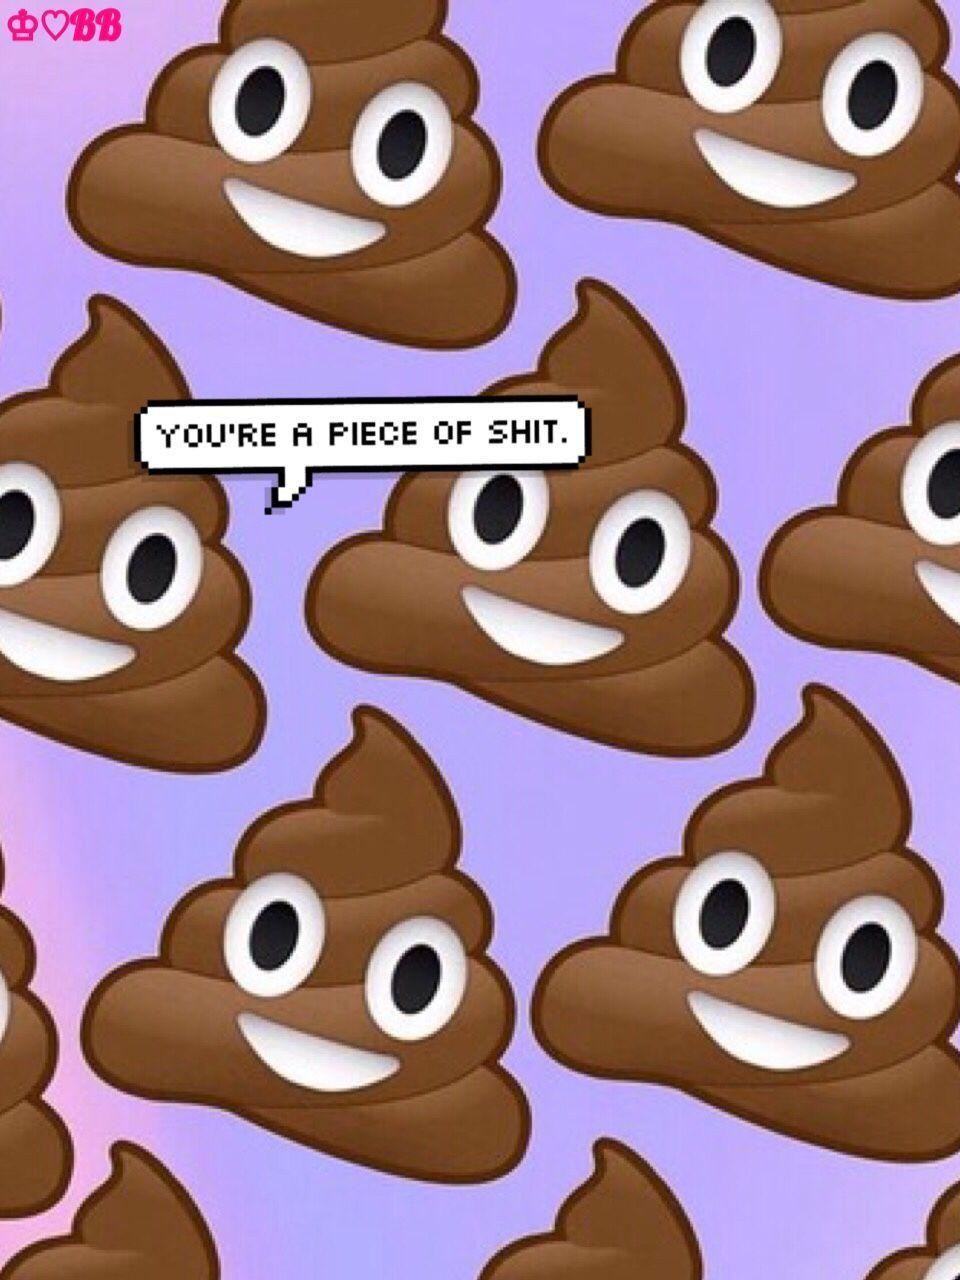 Poop Emoji Wallpapers Top Free Poop Emoji Backgrounds Images, Photos, Reviews